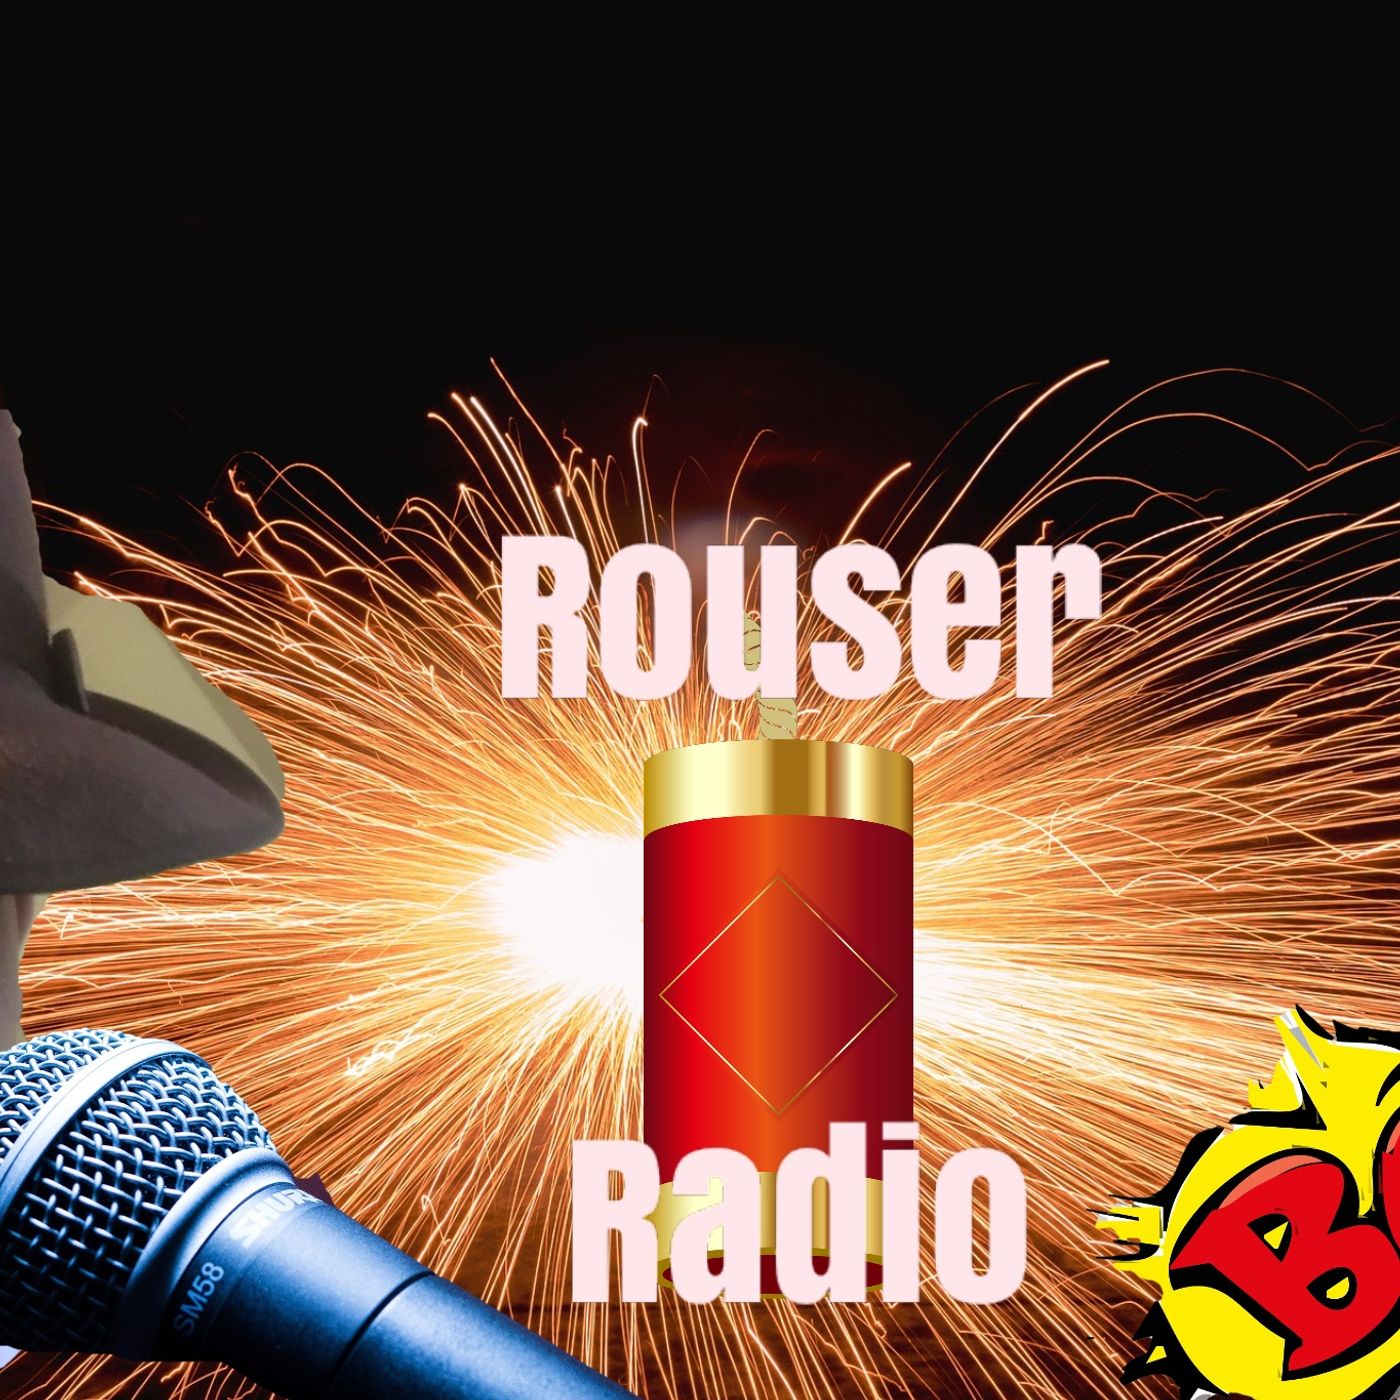 Rouser Radio